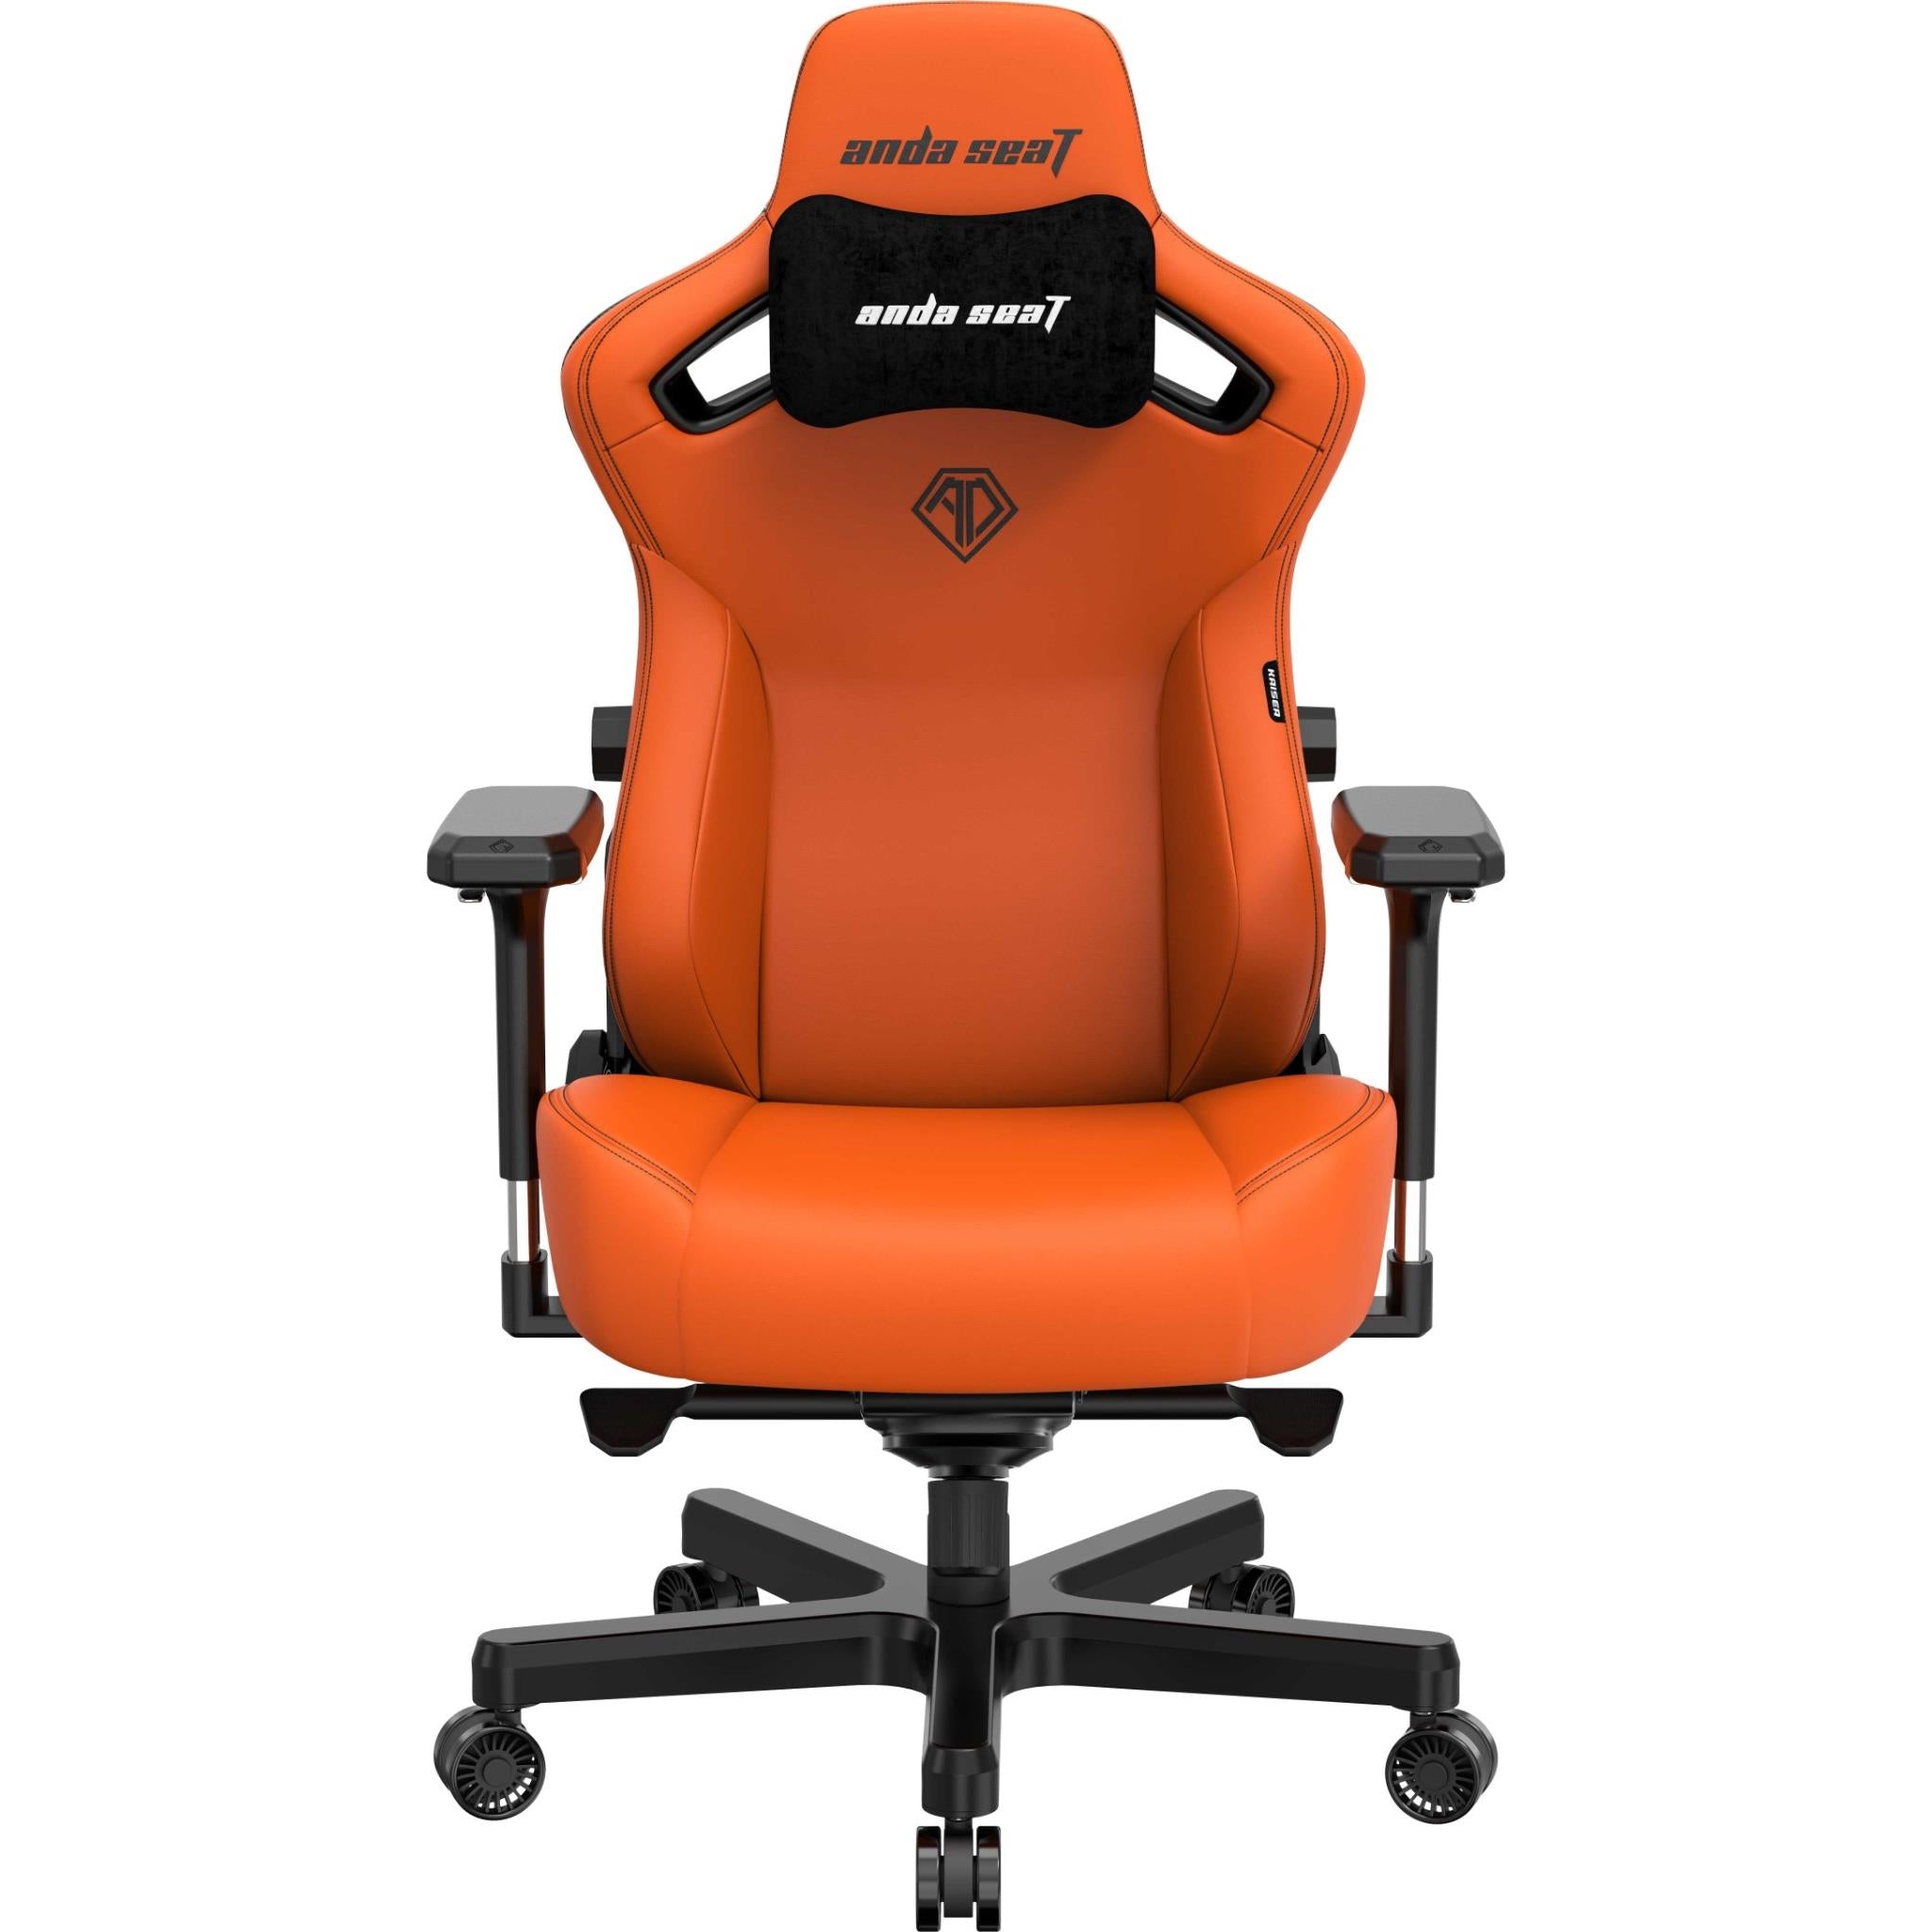 anda seat kaiser 3 series premium gaming chair orange (xl)